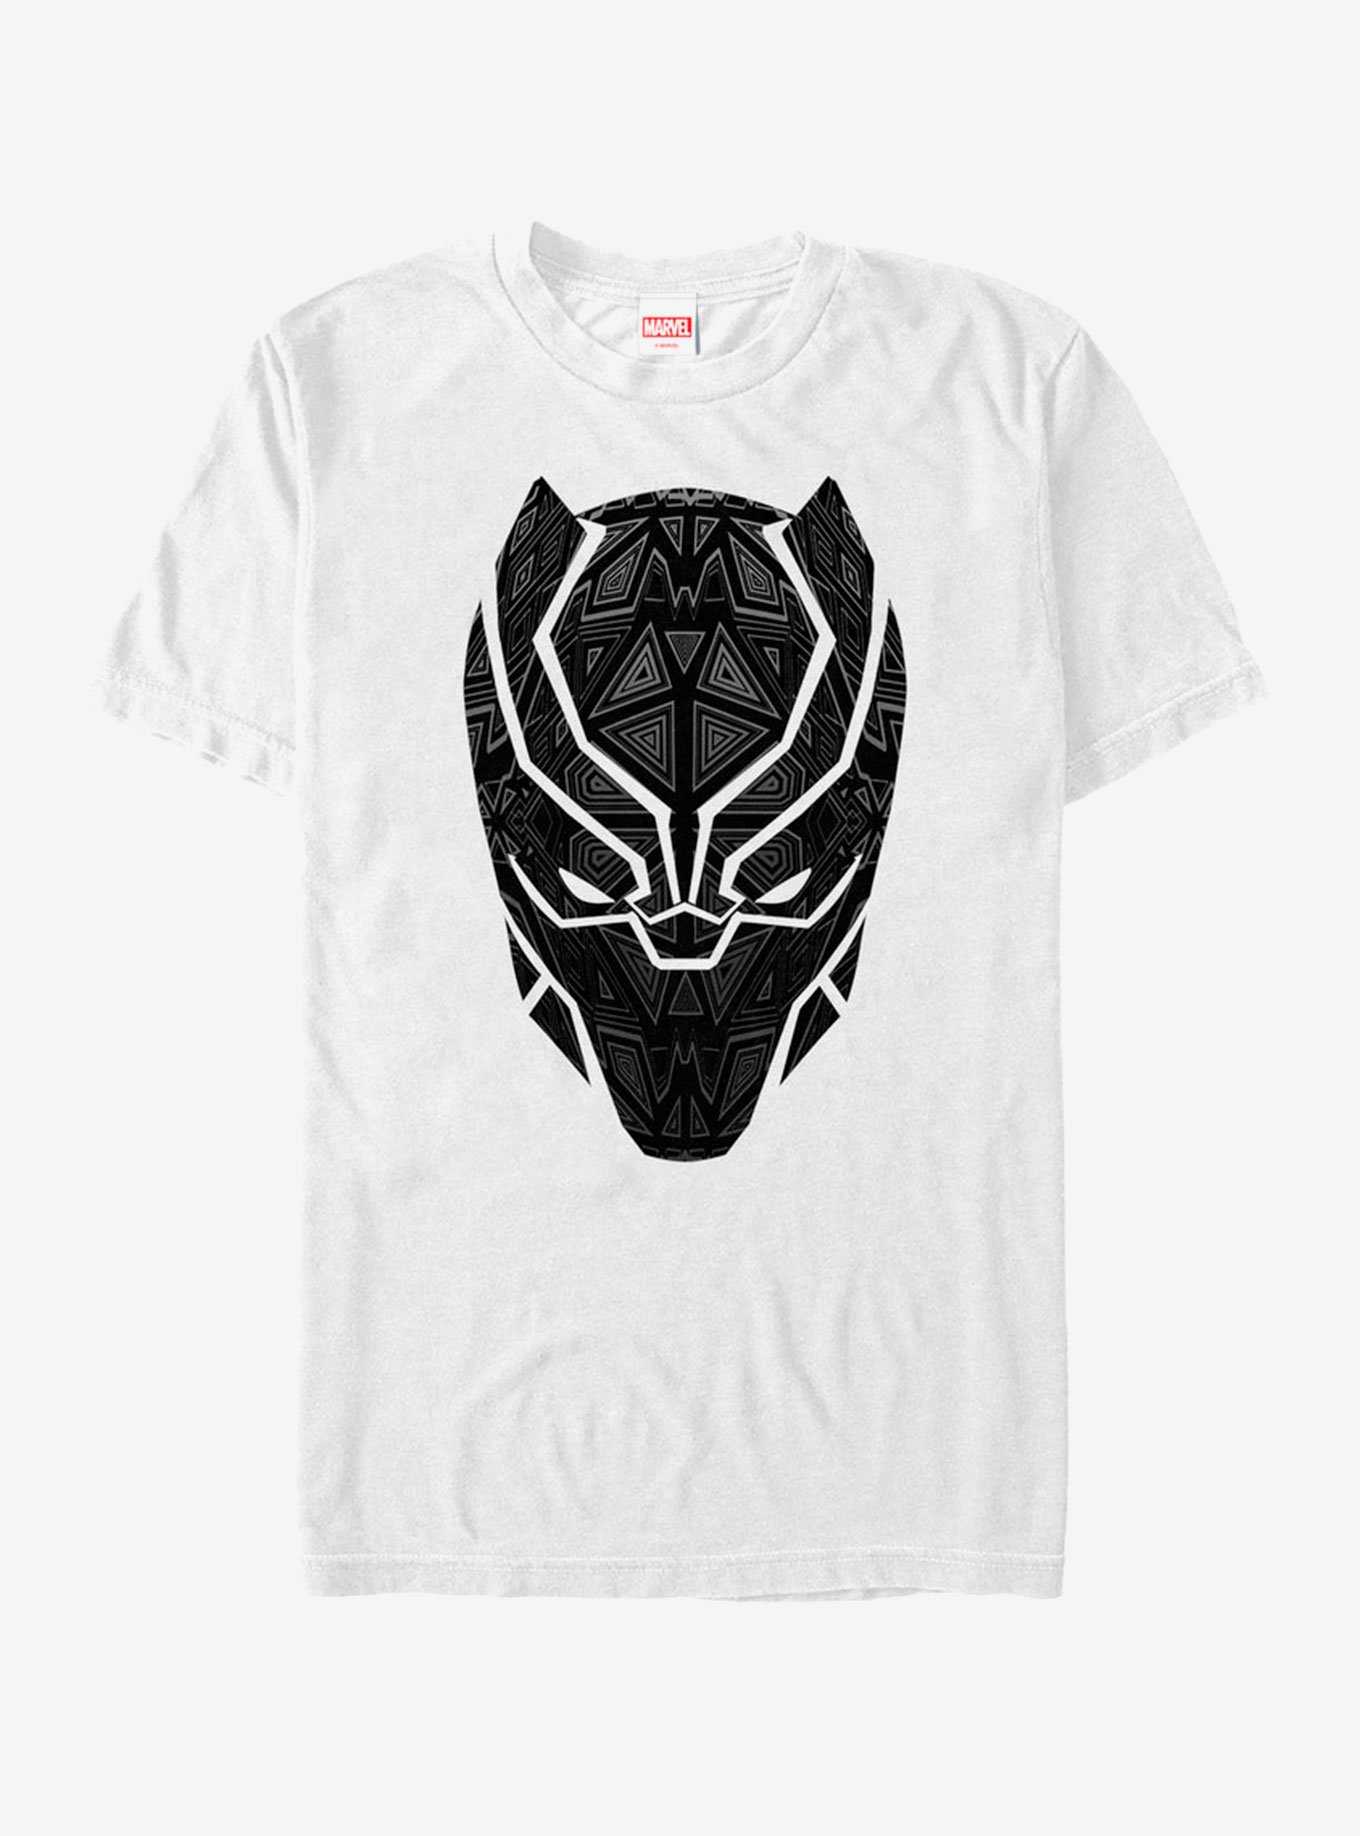 Marvel Black Panther Ornate Mask T-Shirt, , hi-res